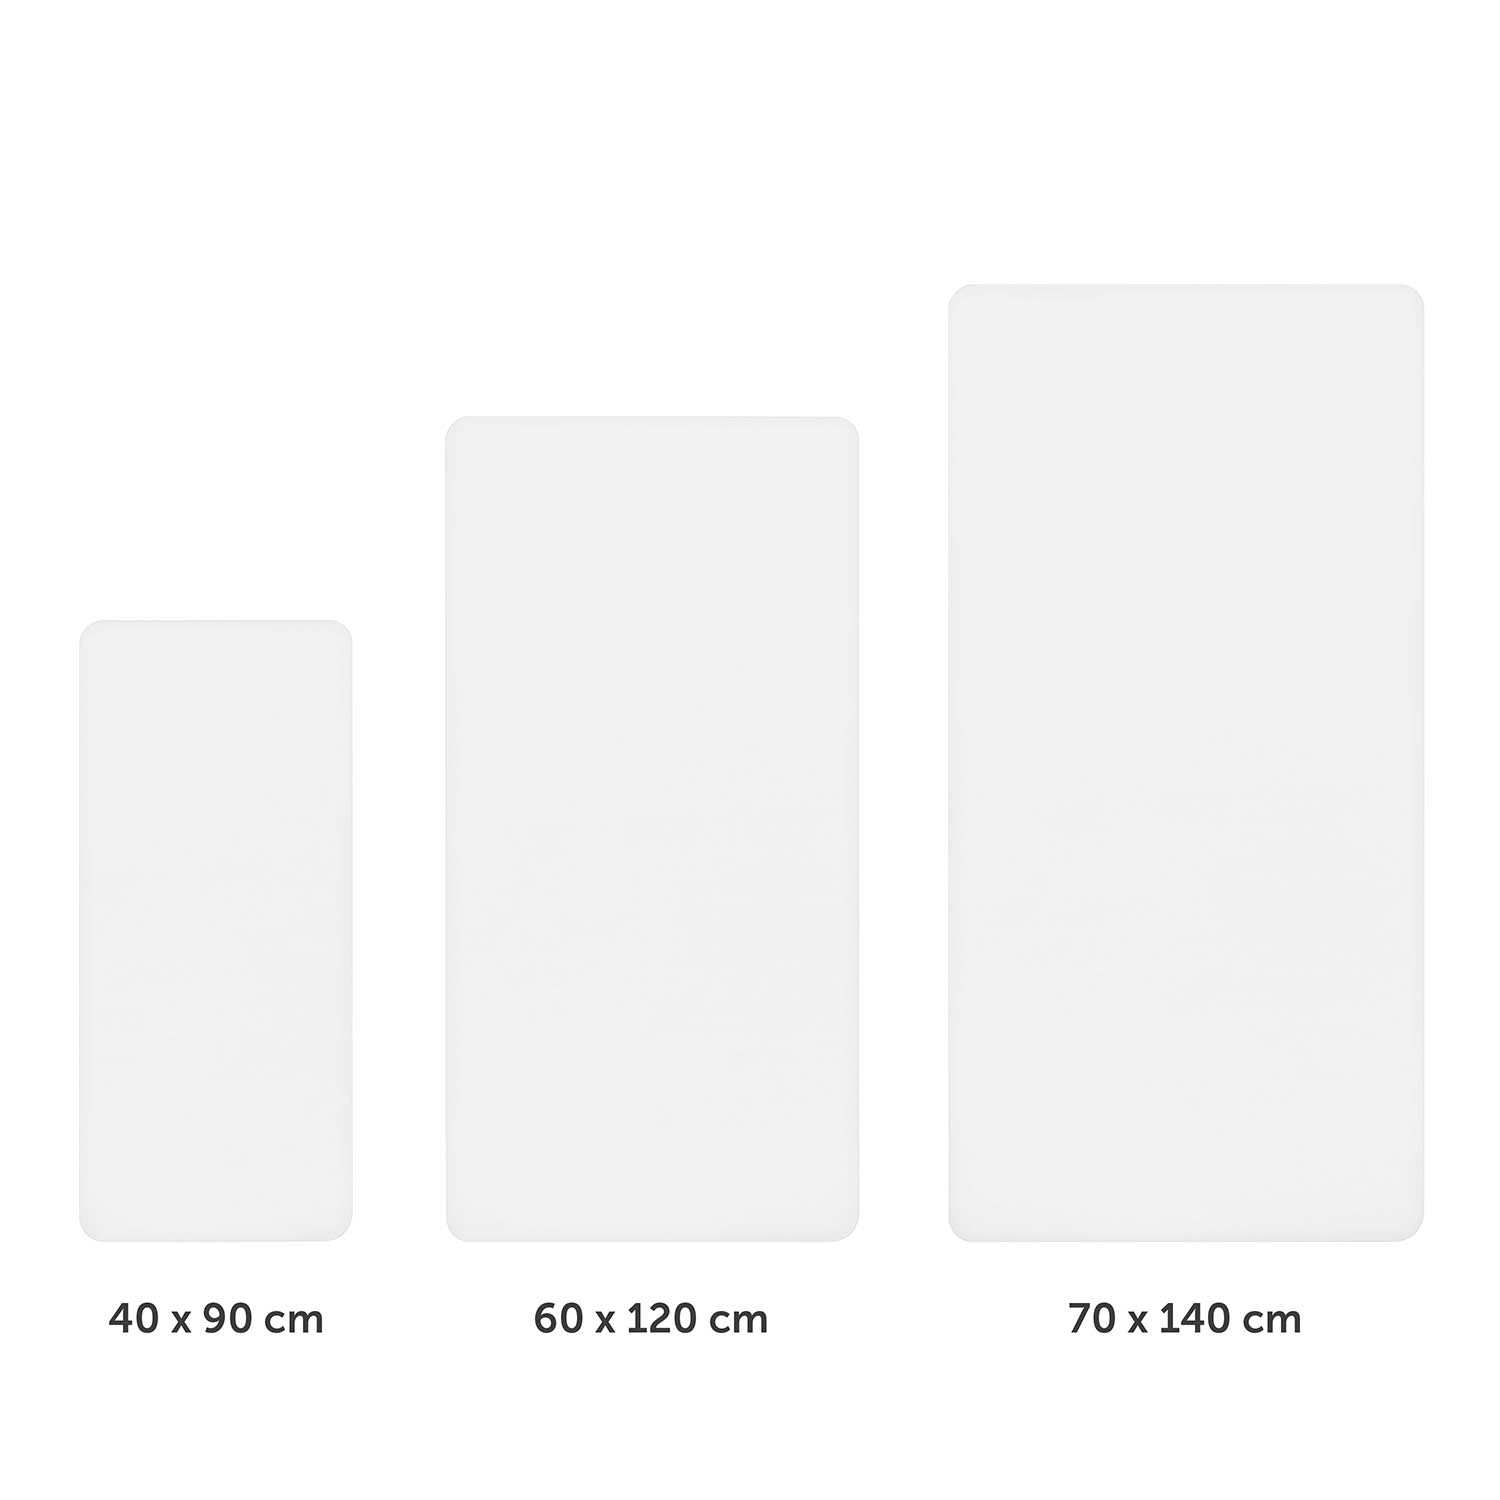 Drei unterschiedlich große weiße Spannbettlaken nebeneinander dargestellt mit Größenangaben 40x90 cm 60x120 cm und 70x140 cm